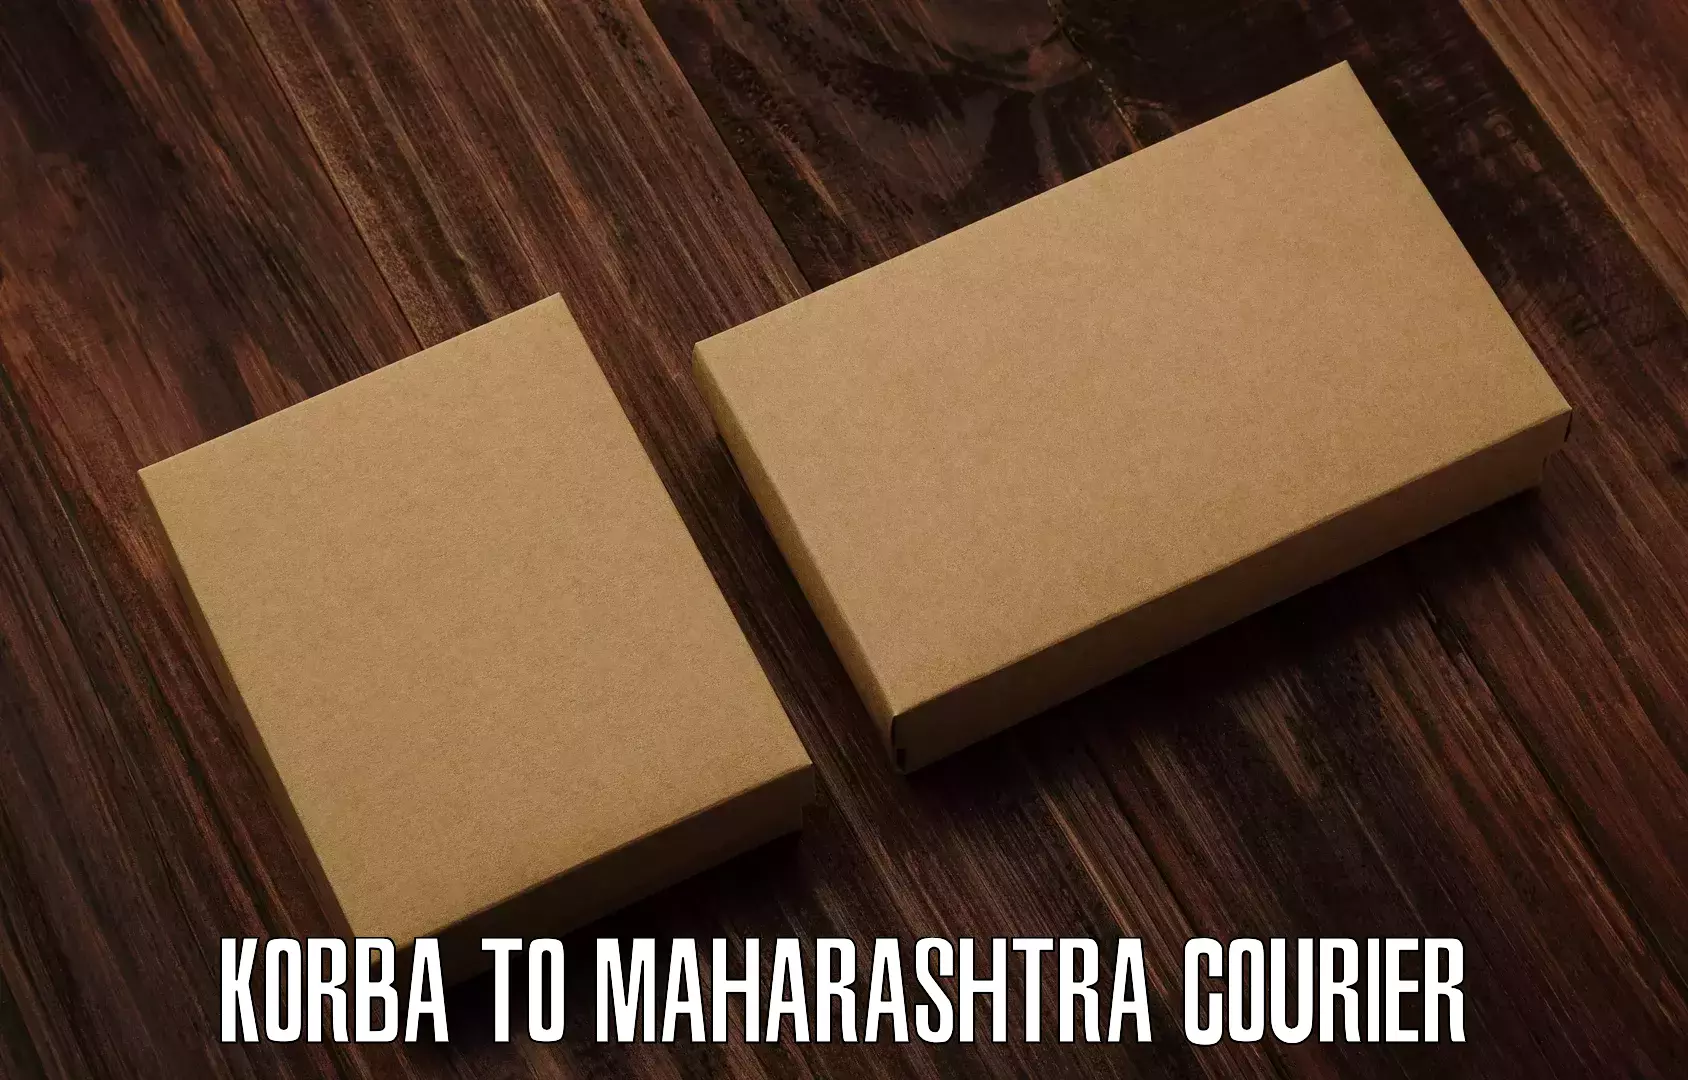 Nationwide shipping capabilities Korba to Maharashtra